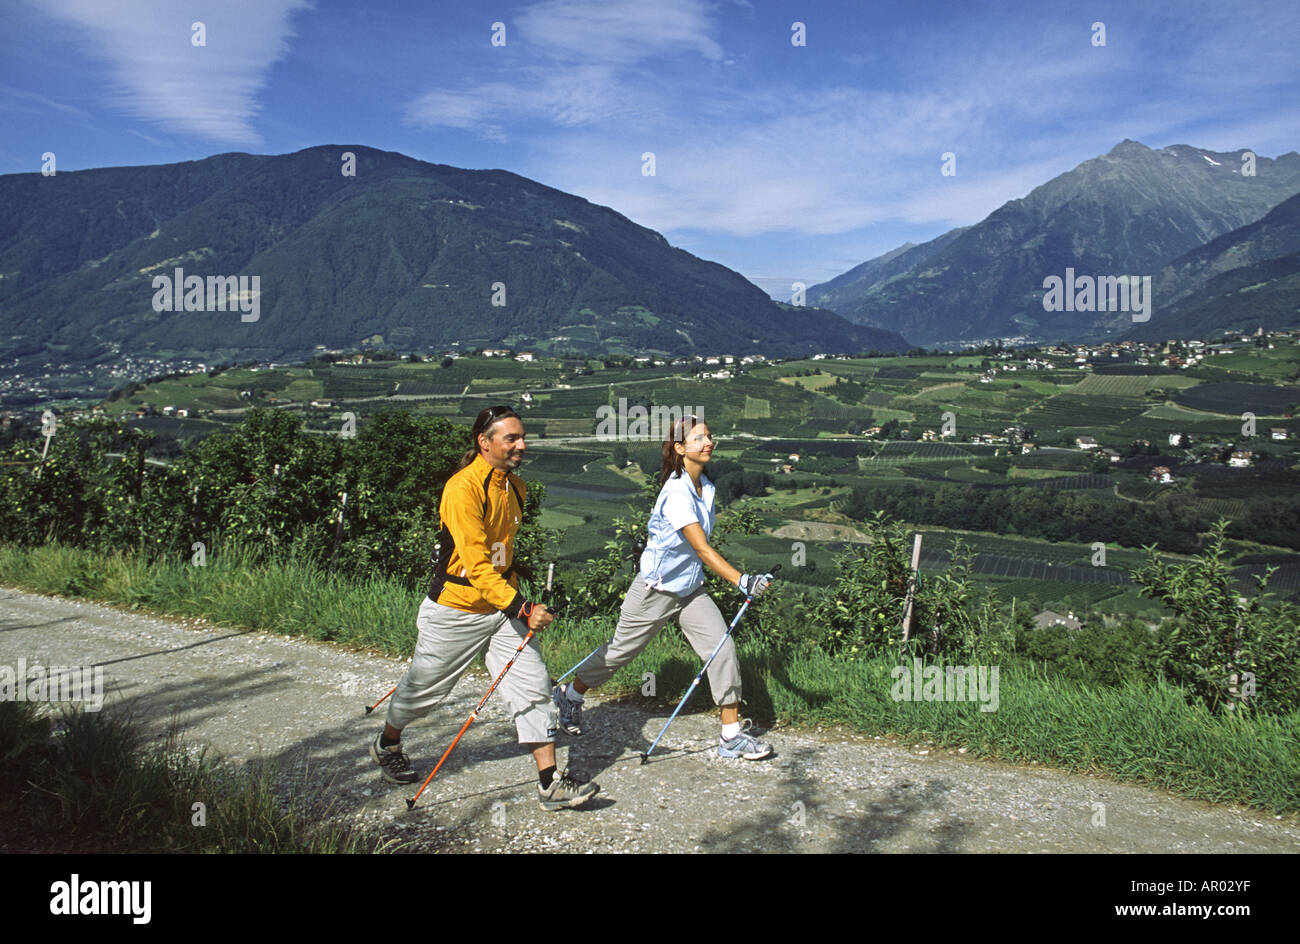 La marche nordique près de Merano, dans le Tyrol du Sud, Italie Banque D'Images